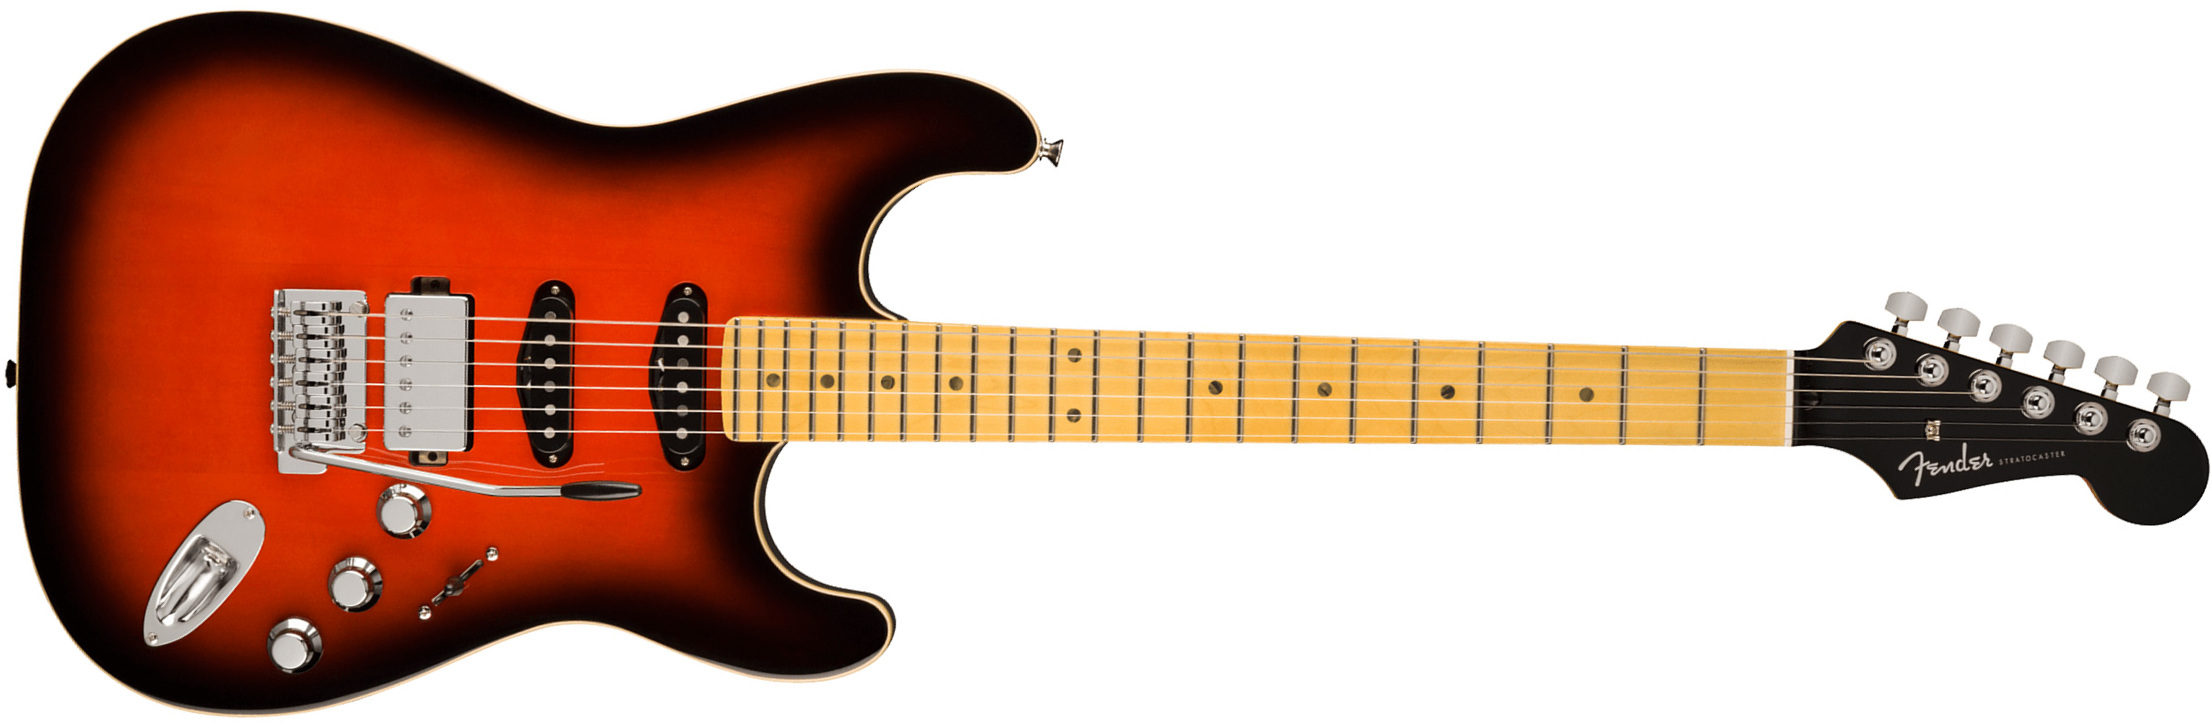 Fender Strat Aerodyne Special Jap Trem Hss Mn - Hot Rod Burst - Elektrische gitaar in Str-vorm - Main picture